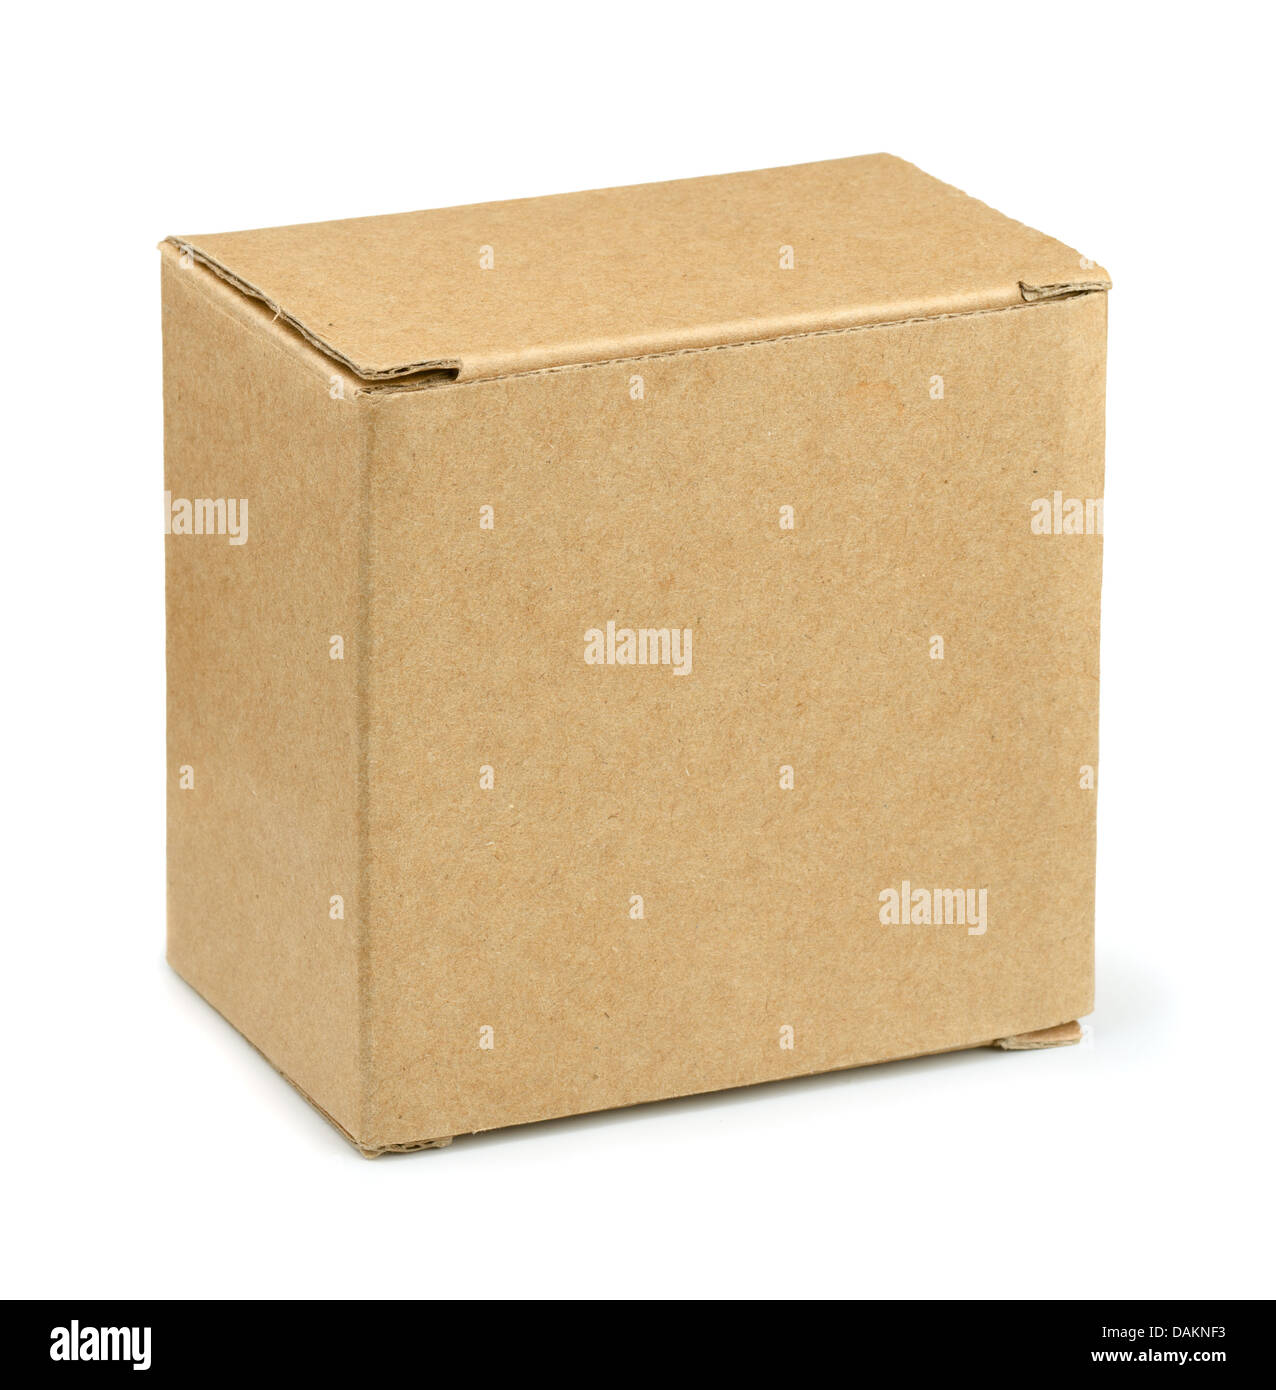 Caja de cartón marrón cerrado aislado en blanco Foto de stock